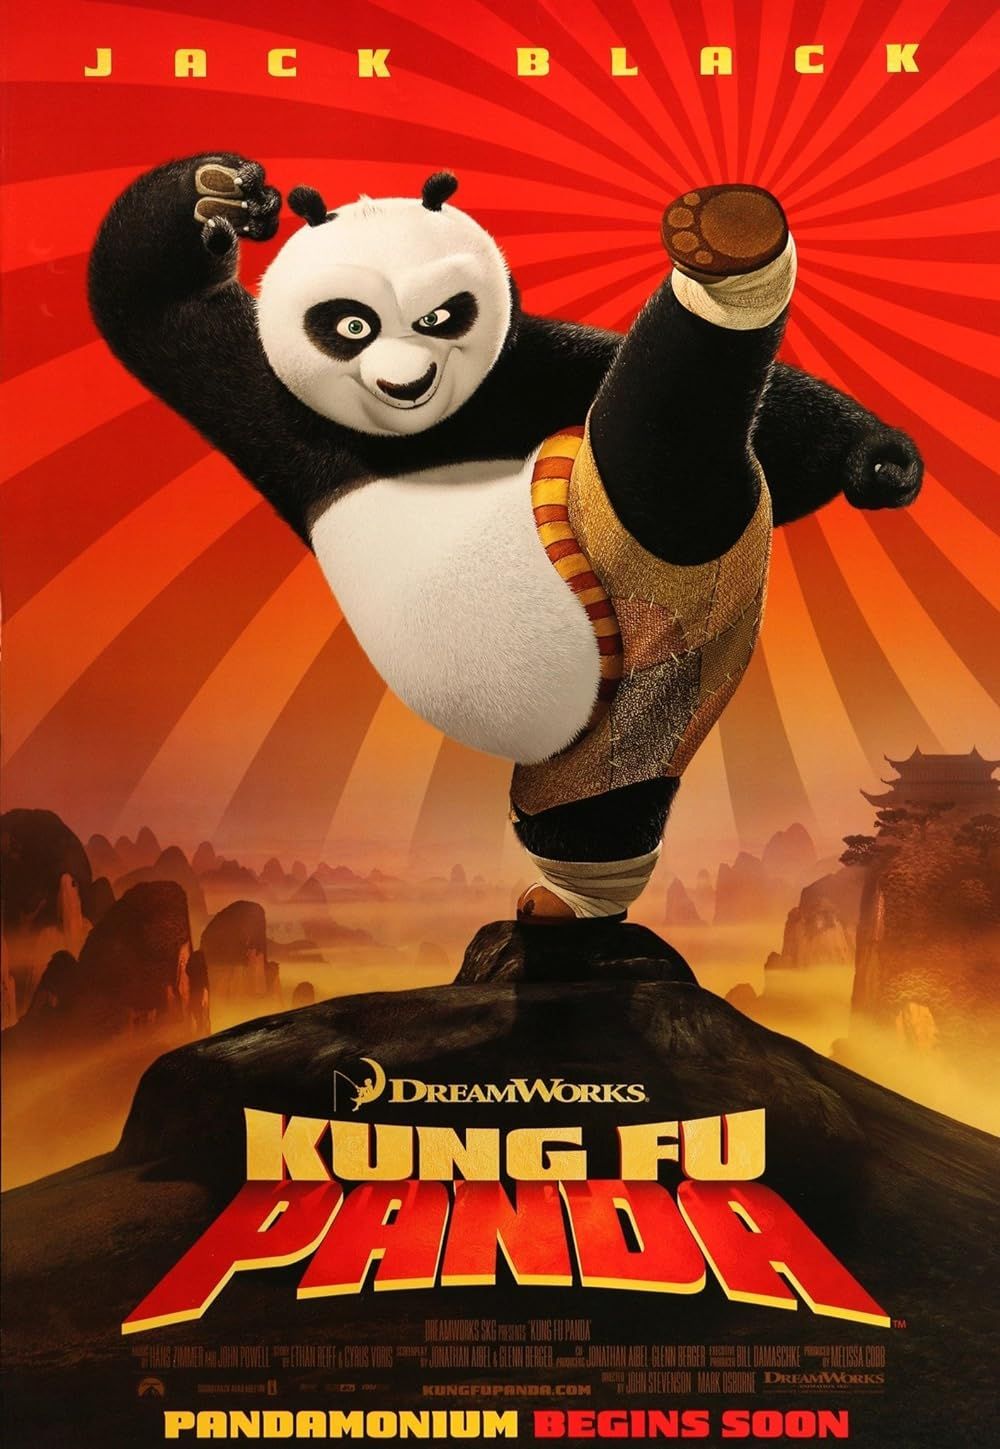 Pôster de Kung Fu Panda da DreamWorks Animation mostrando o personagem titular praticando artes marciais